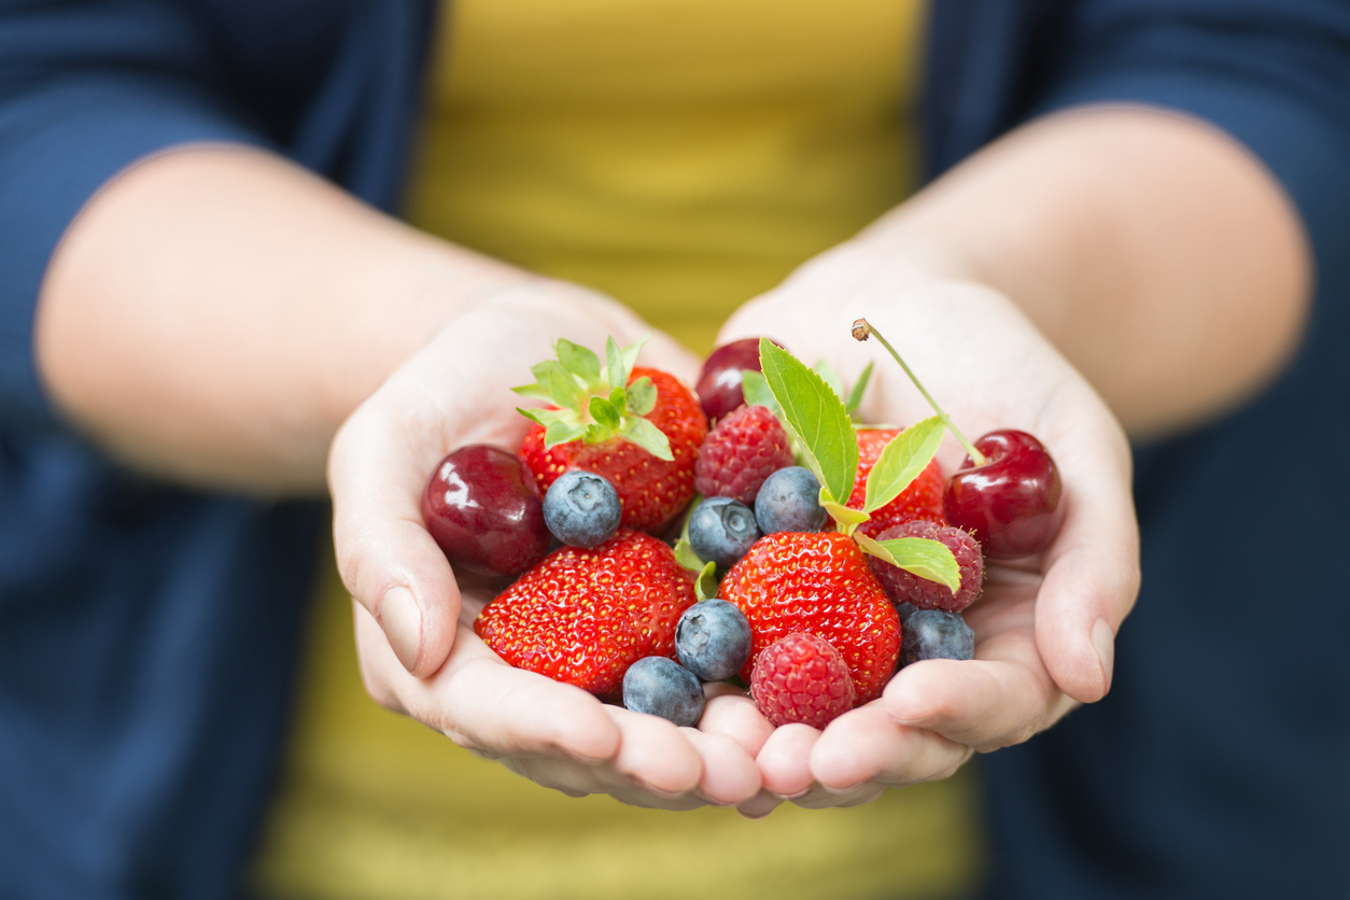 Ricas em antioxidantes, fibras e vitaminas, as frutas vermelhas também ajudam a promover a saúde cardiovascular